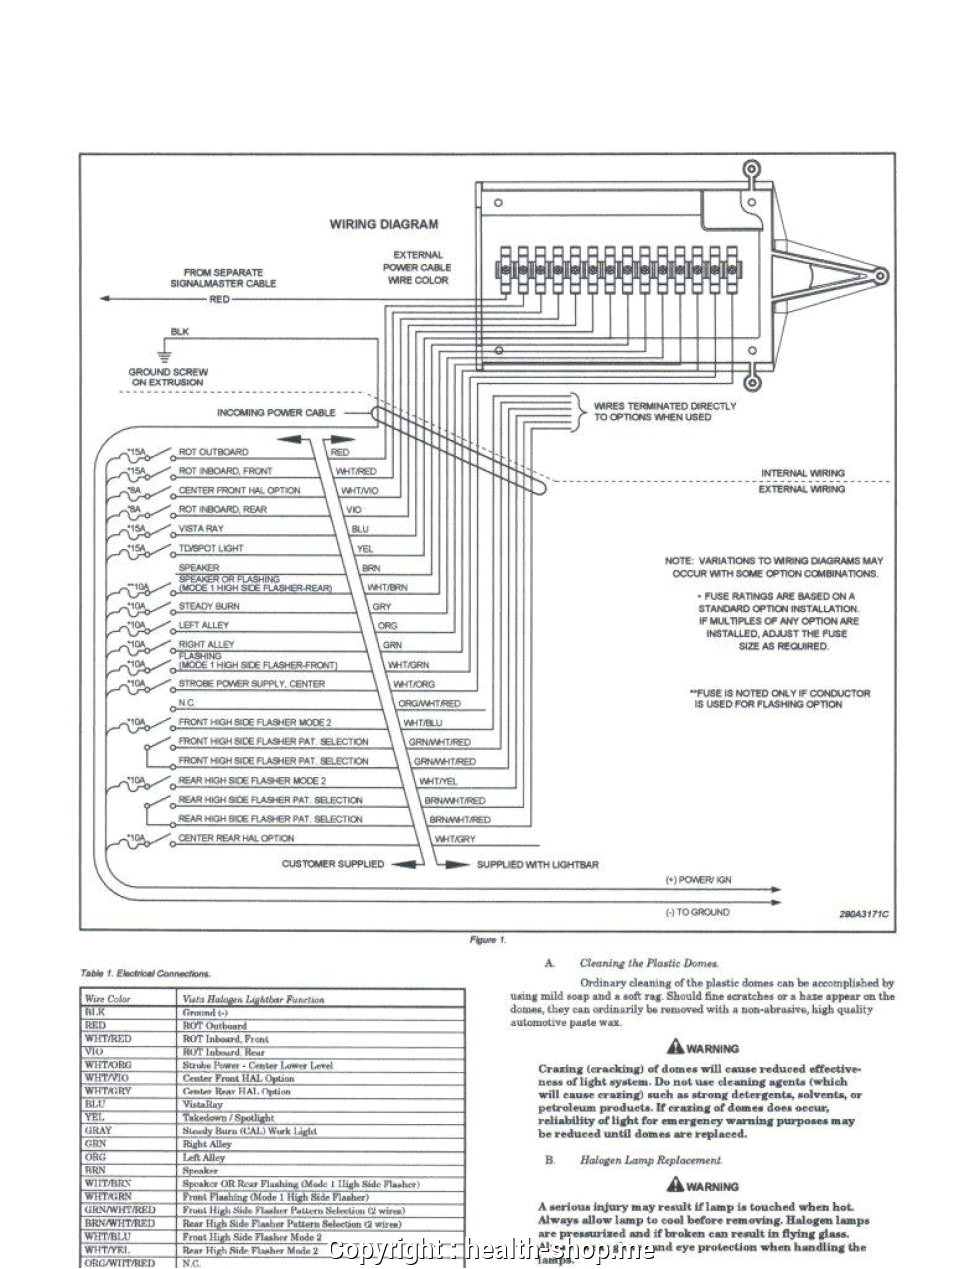 whelen wiring diagram wiring diagram compilation whelen csp690 wiring diagram manual e book whelen wiring diagram